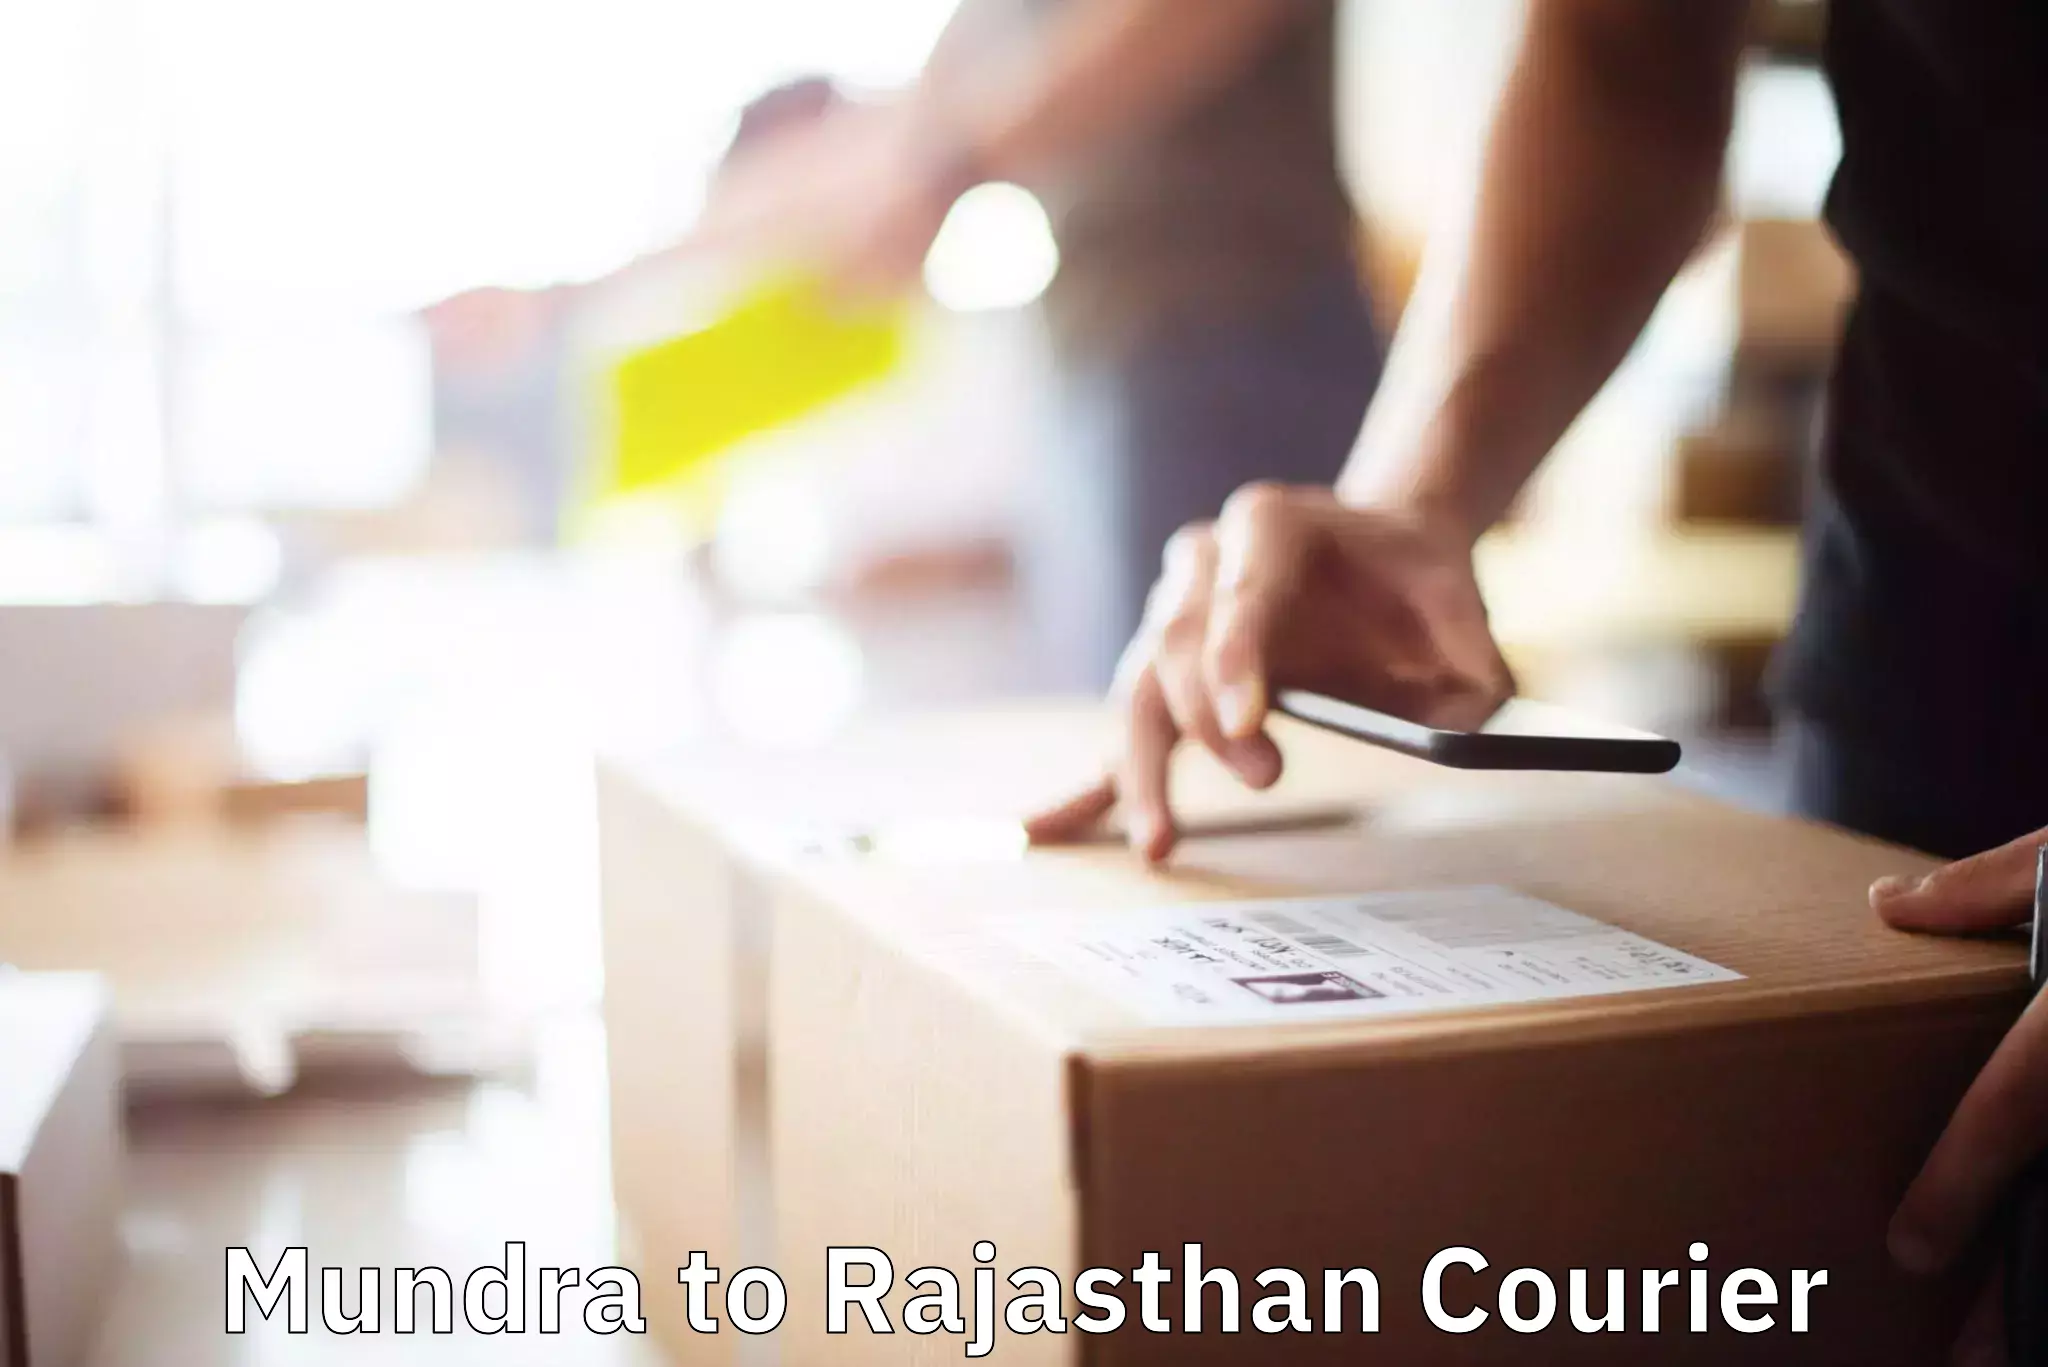 Furniture moving experts Mundra to Rajasthan